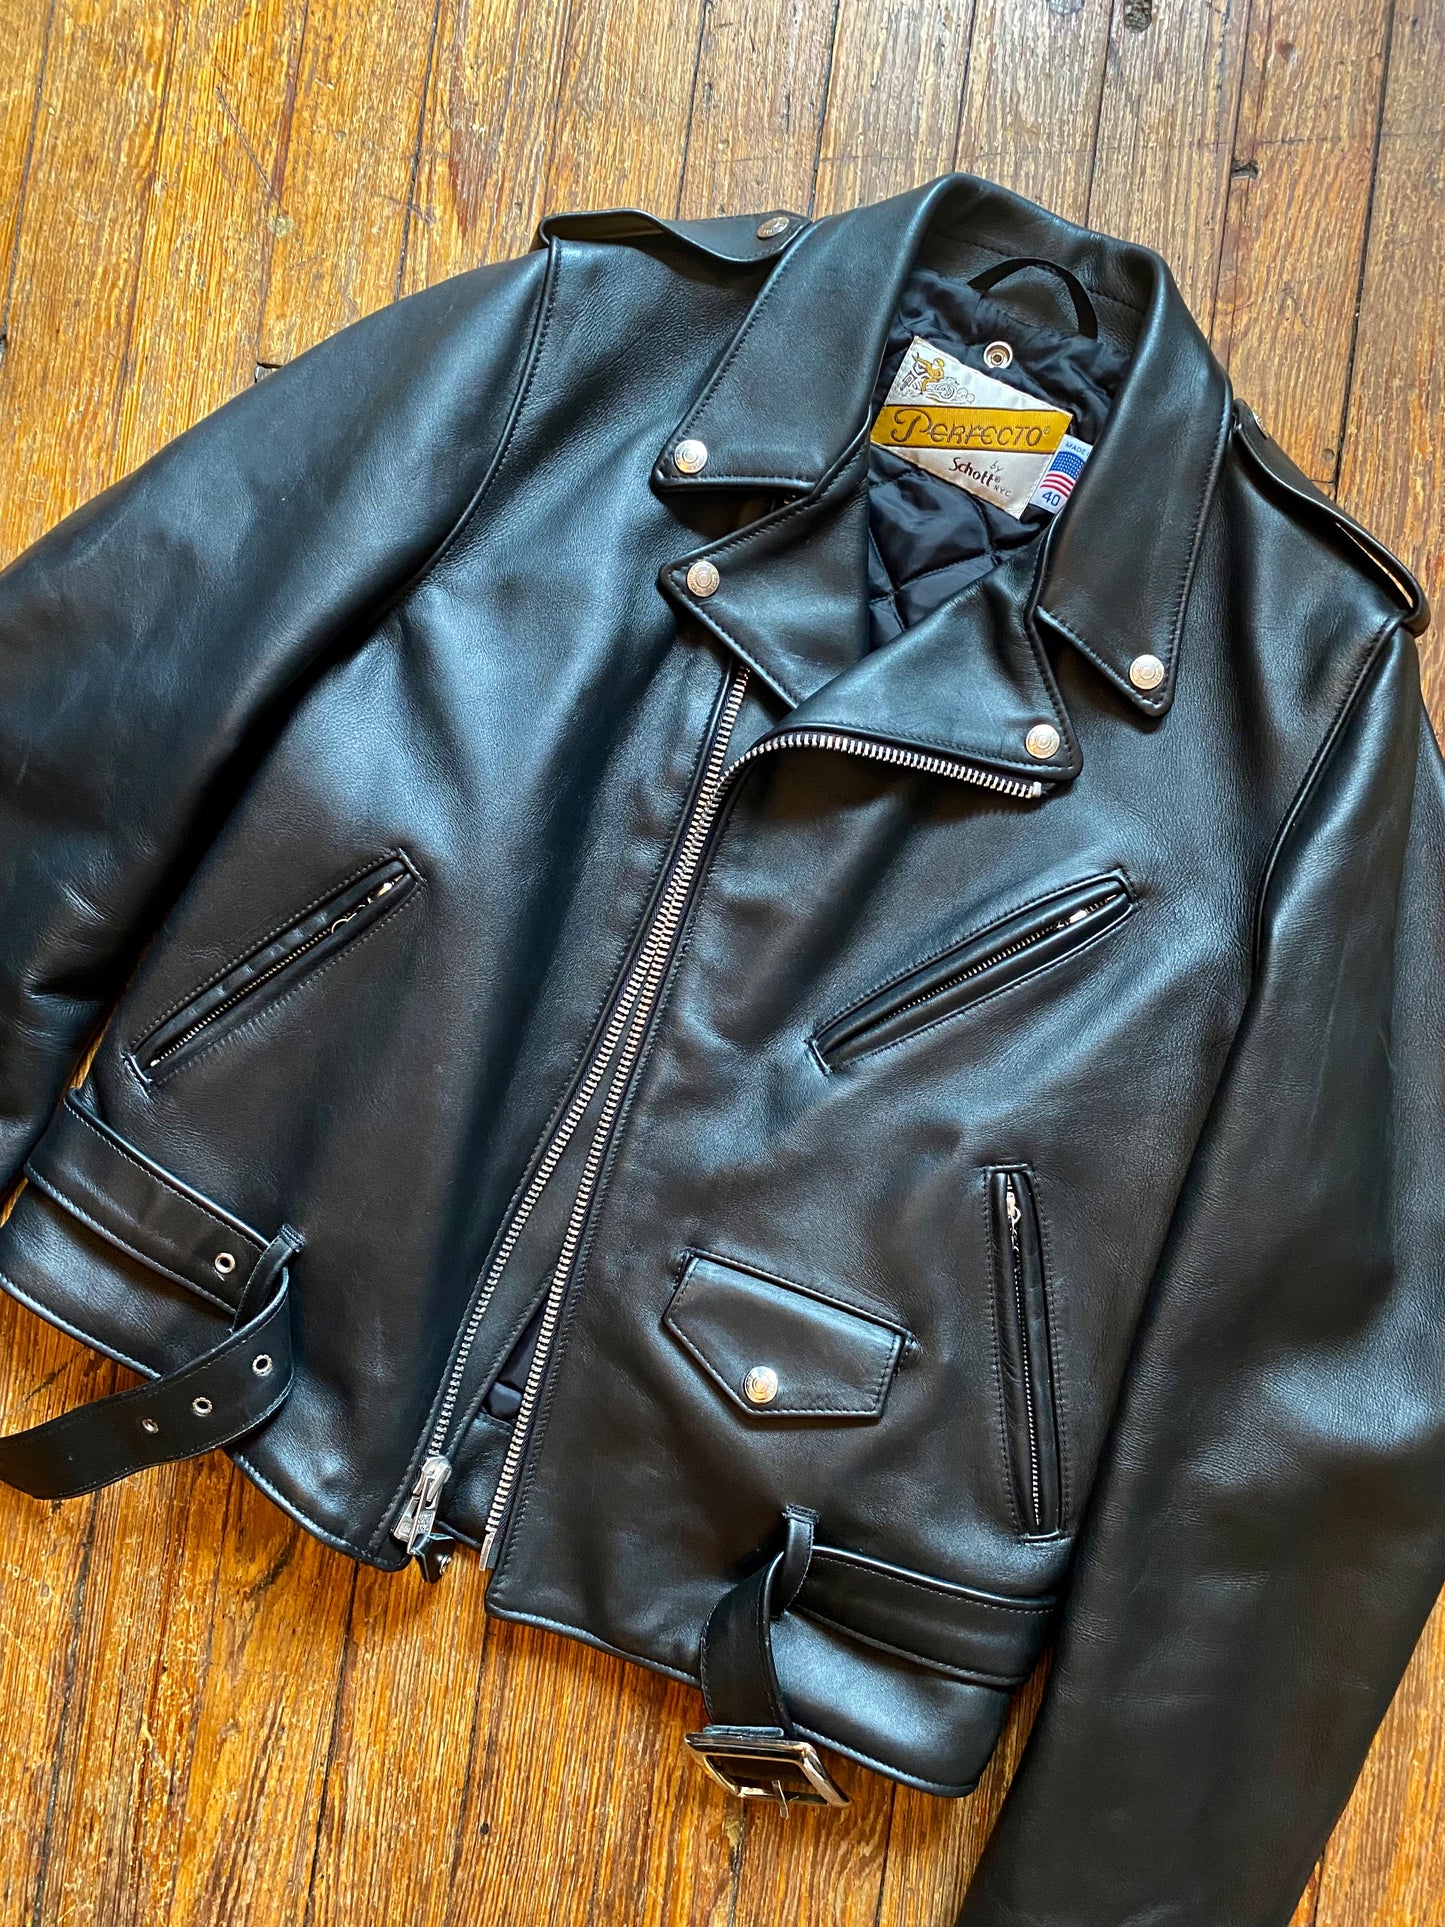 Brand New Schott “Perfecto” Motorcycle Jacket